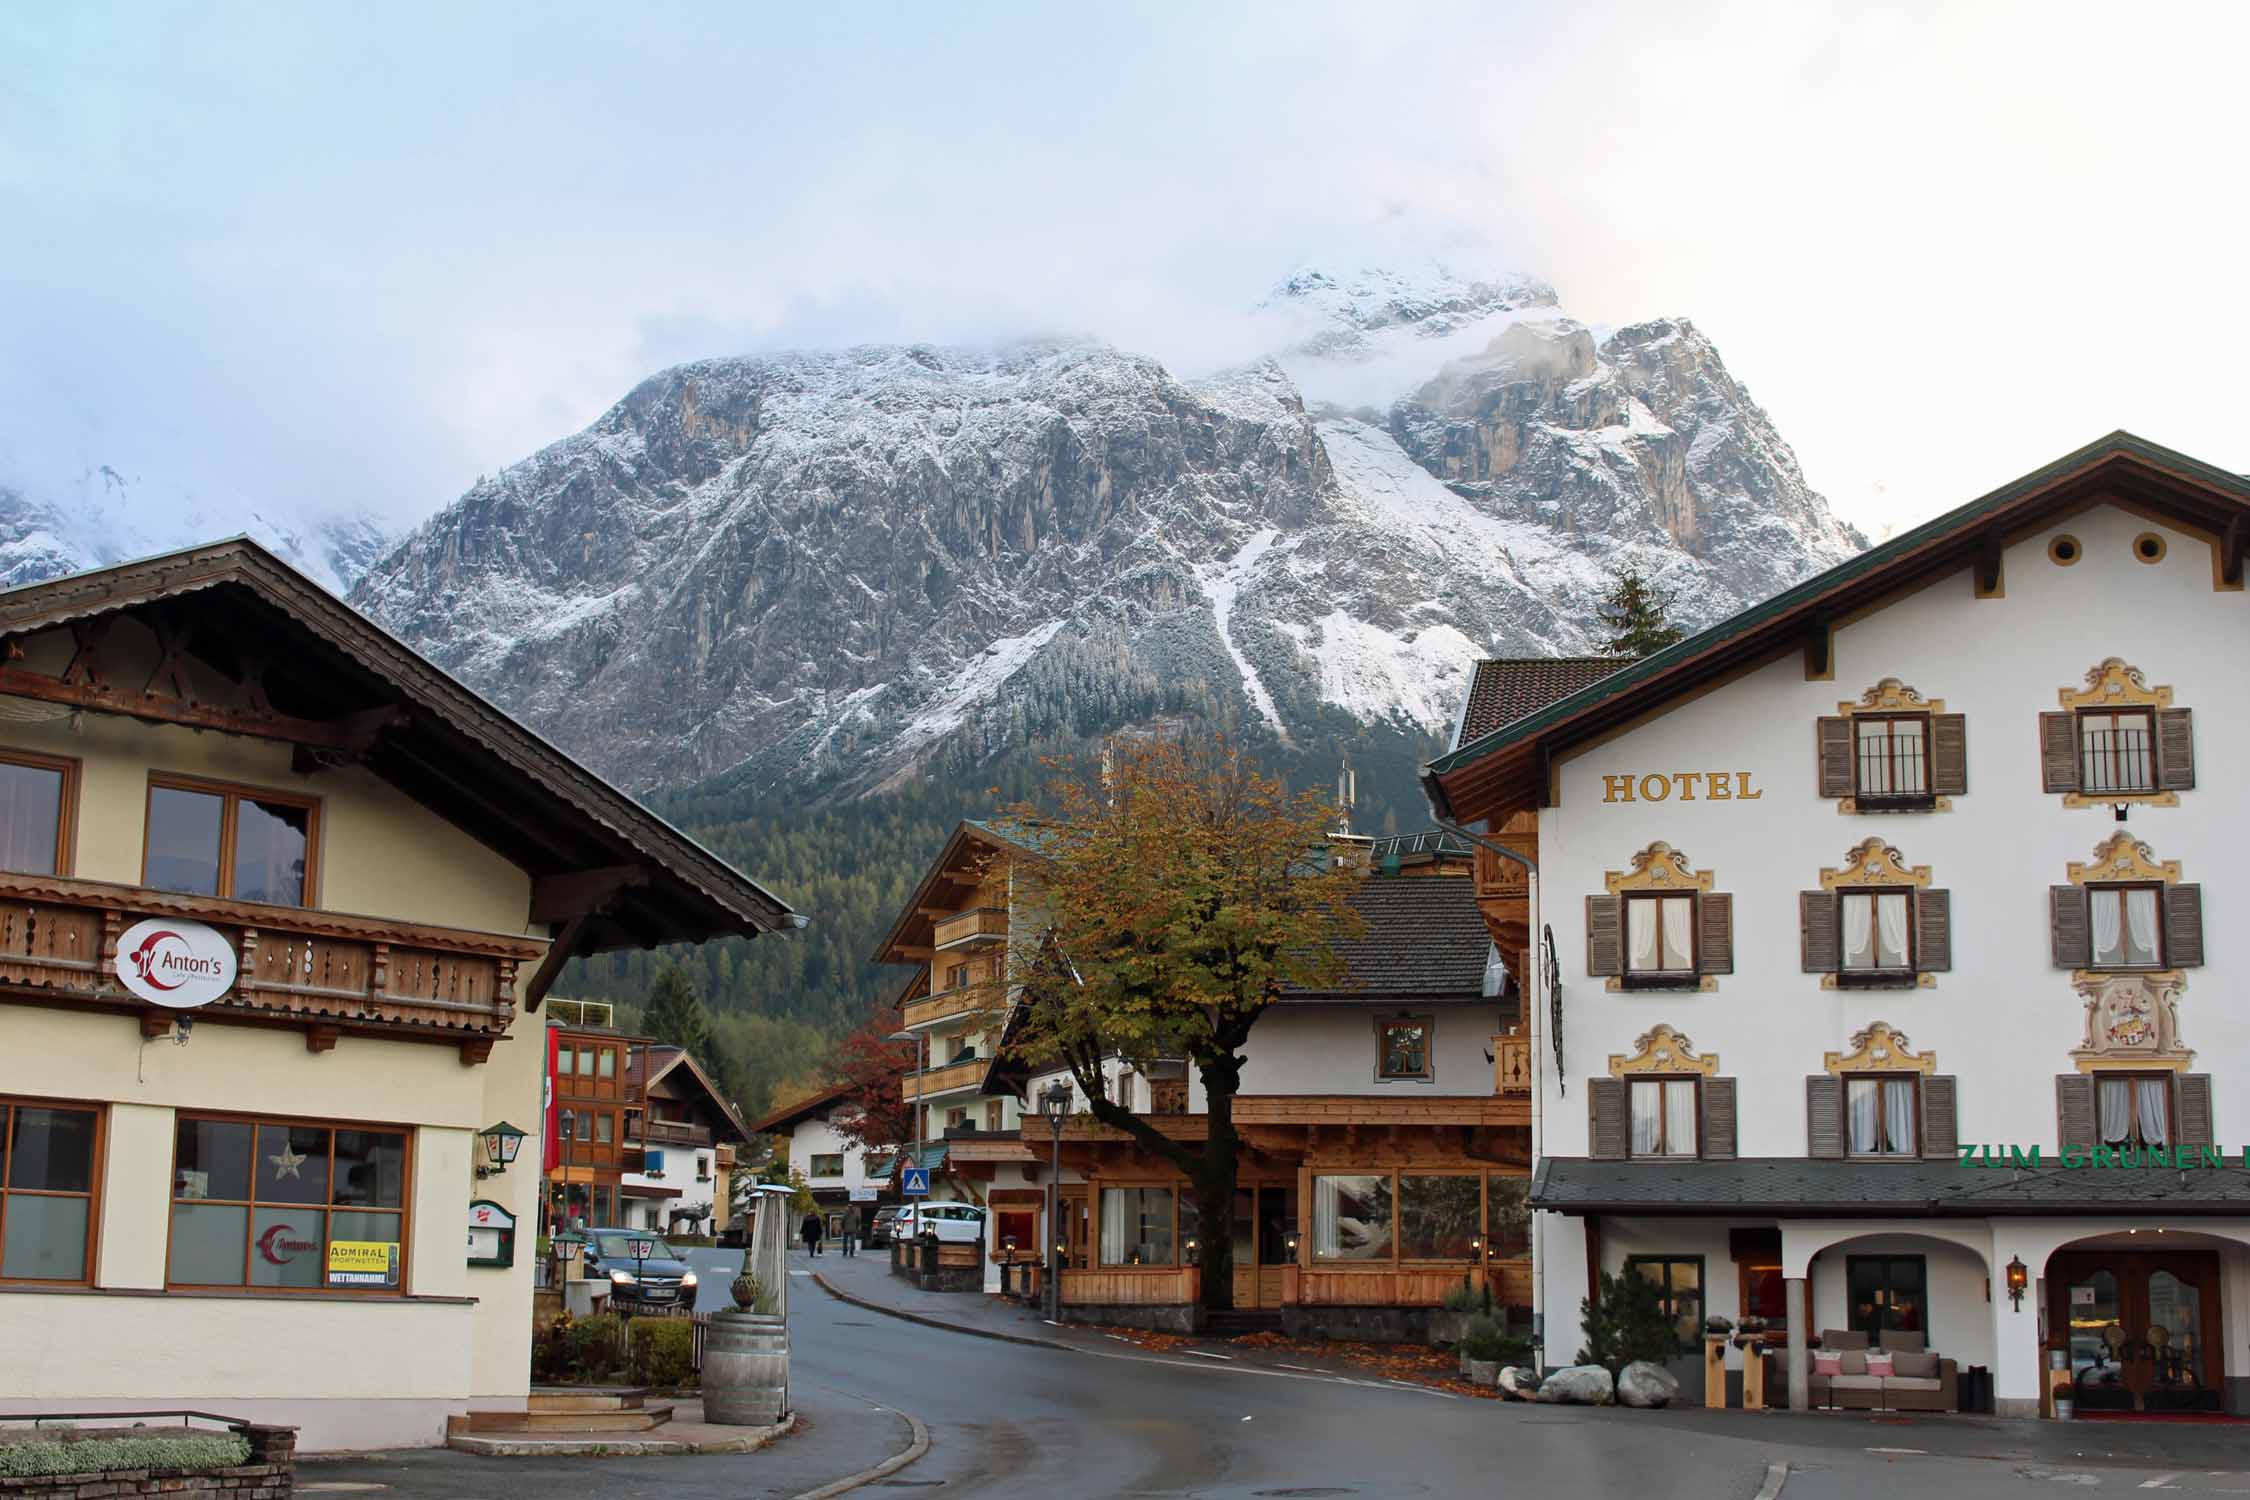 Paysage près de Garmisch-Partenkirchen